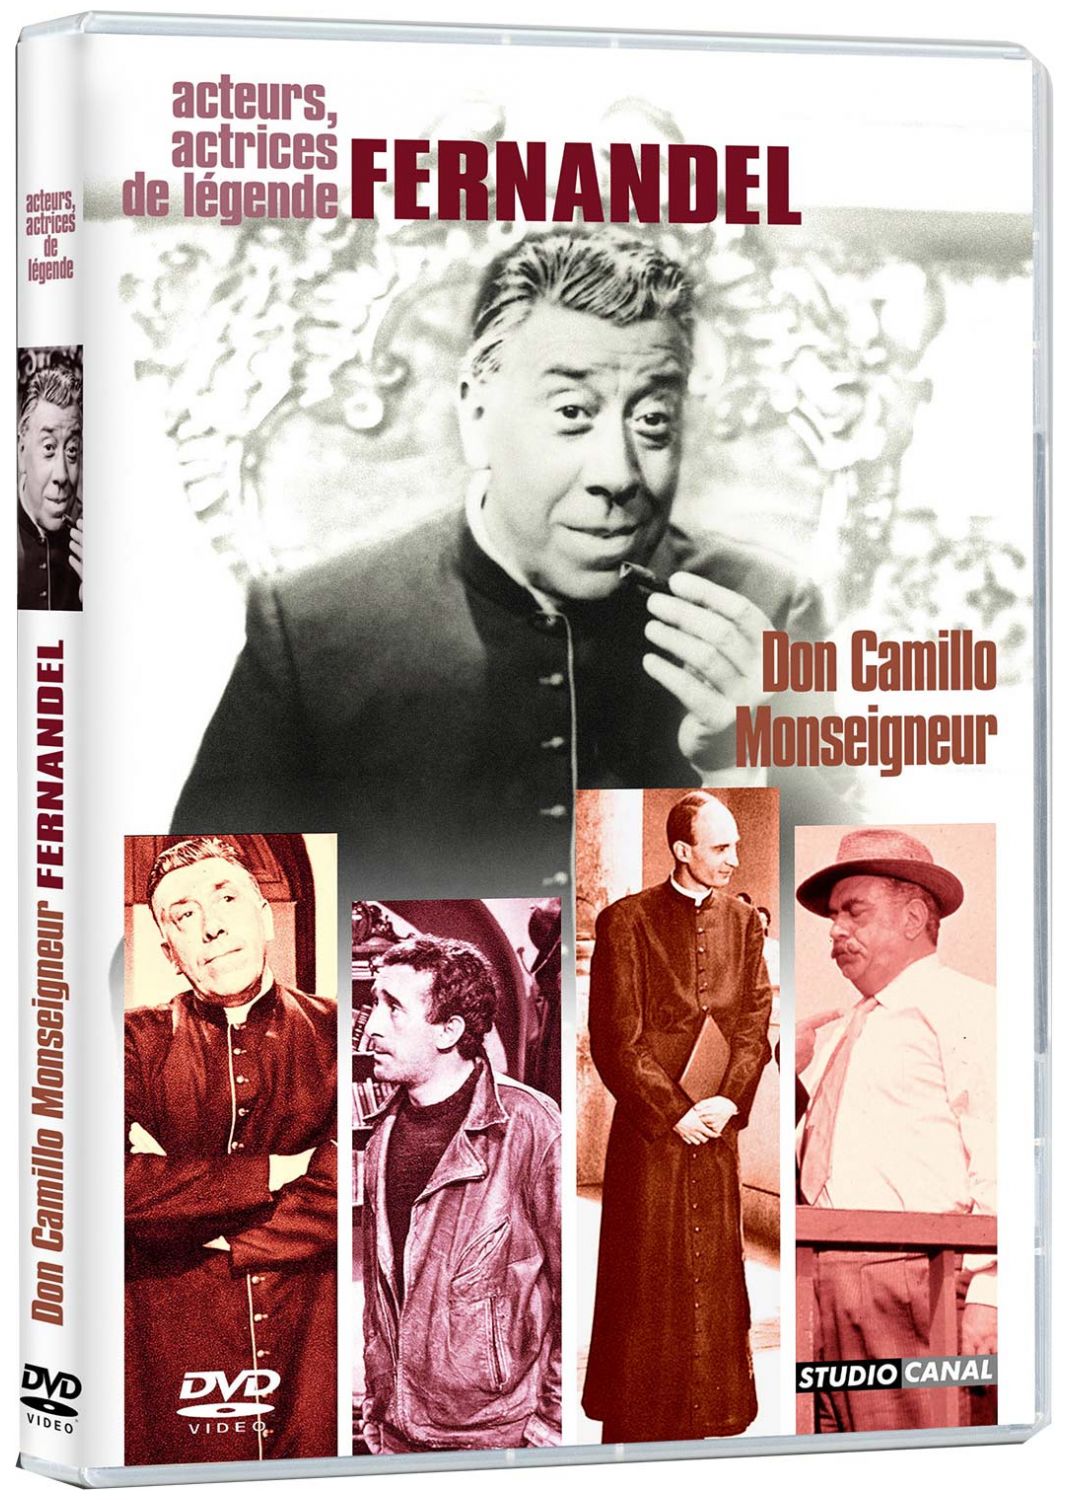 Don Camillo Monseigneur [DVD]